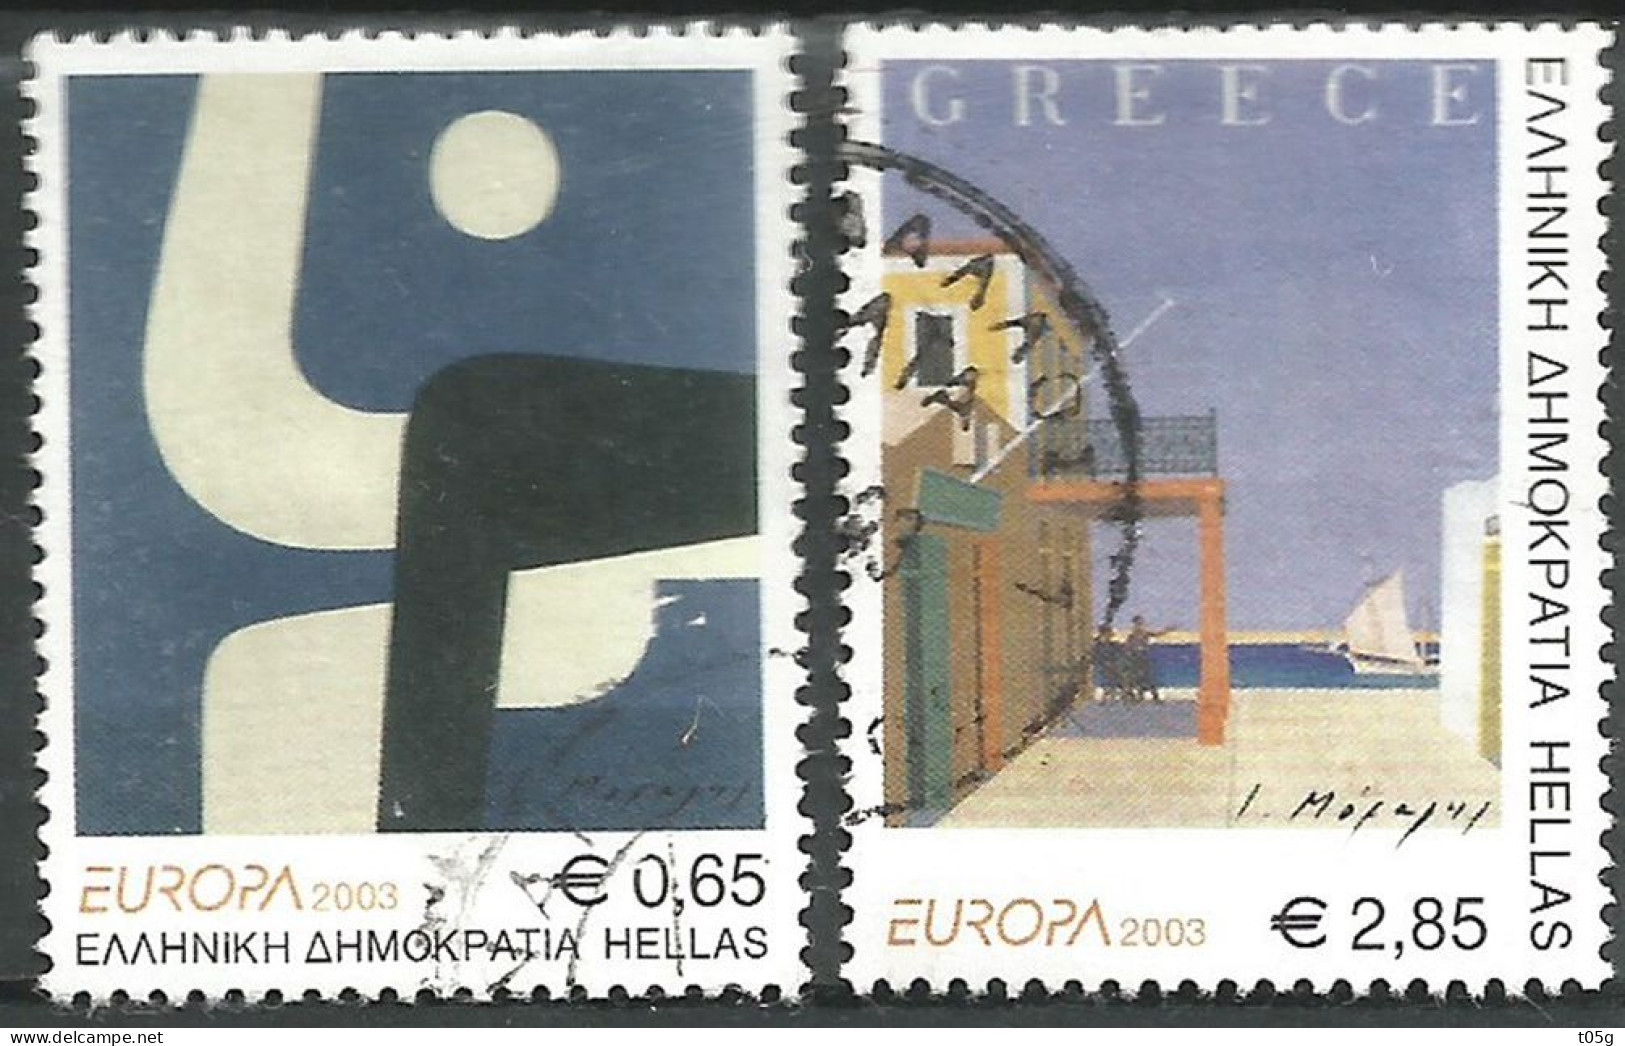 GREECE- GRECE- HELLAS 2003: EUROPA CERT- Compl. Set Used - Gebruikt